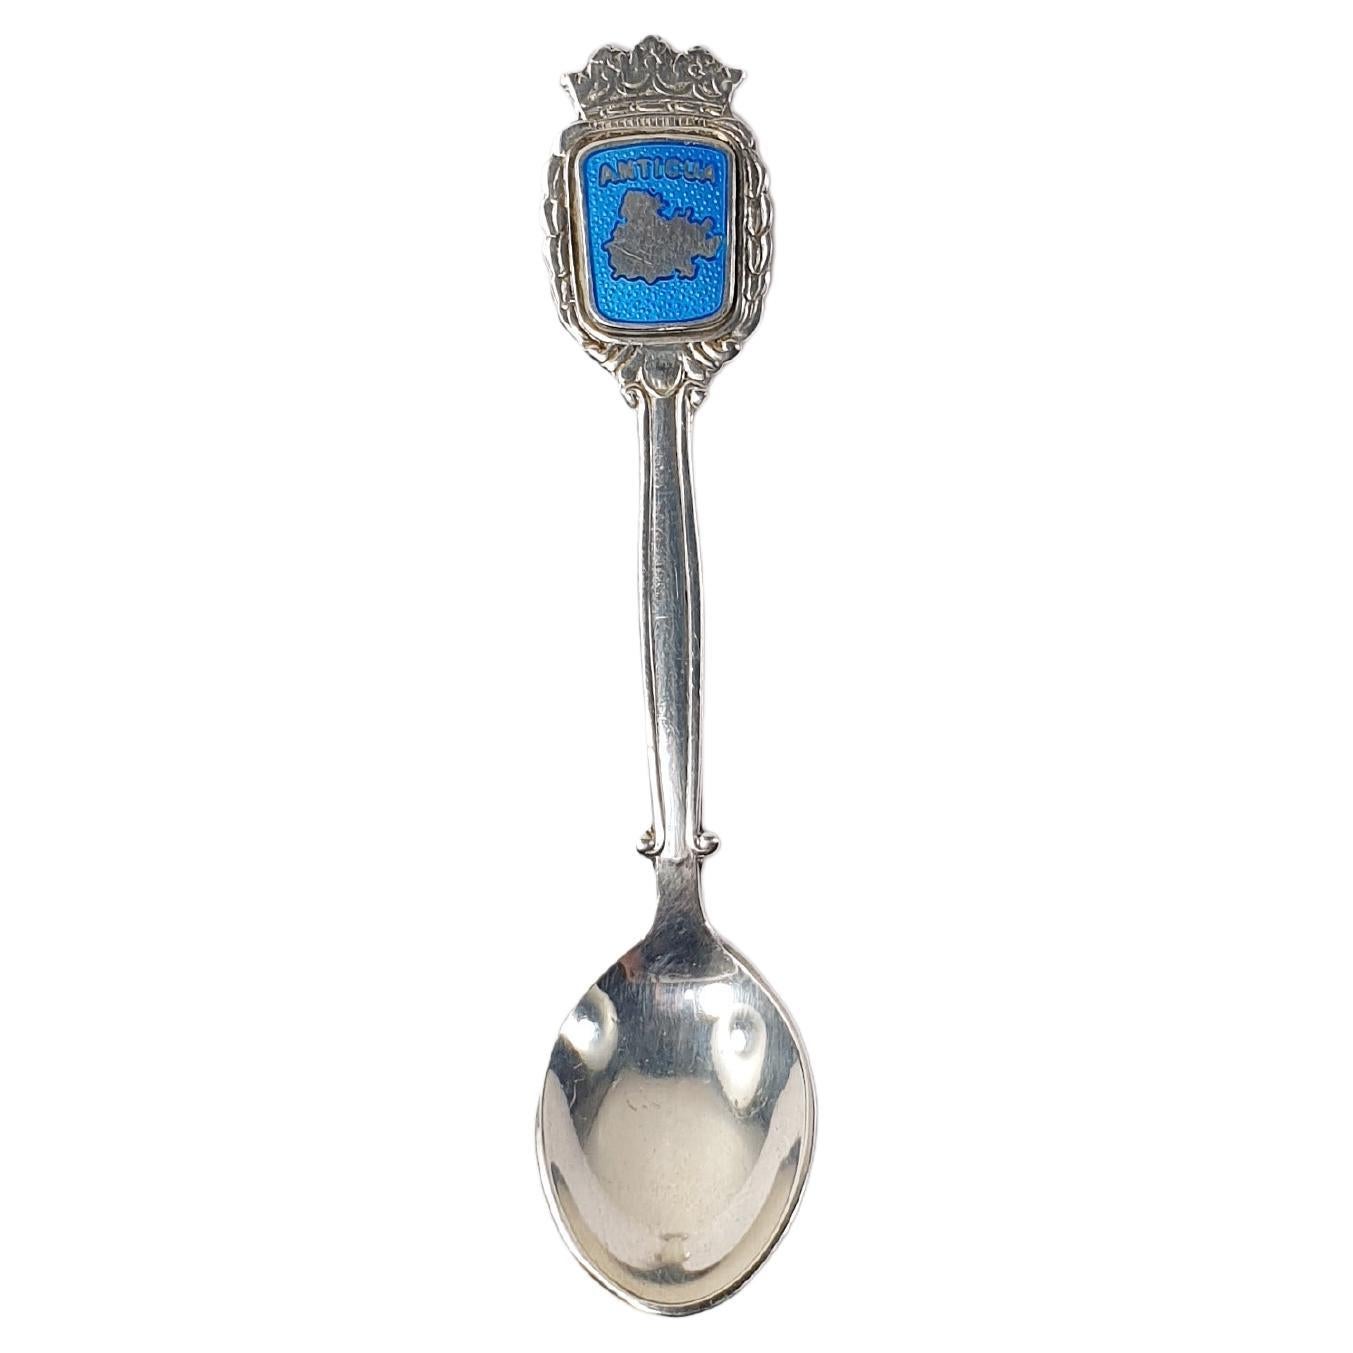 Antigua Collection Silver Teaspoon